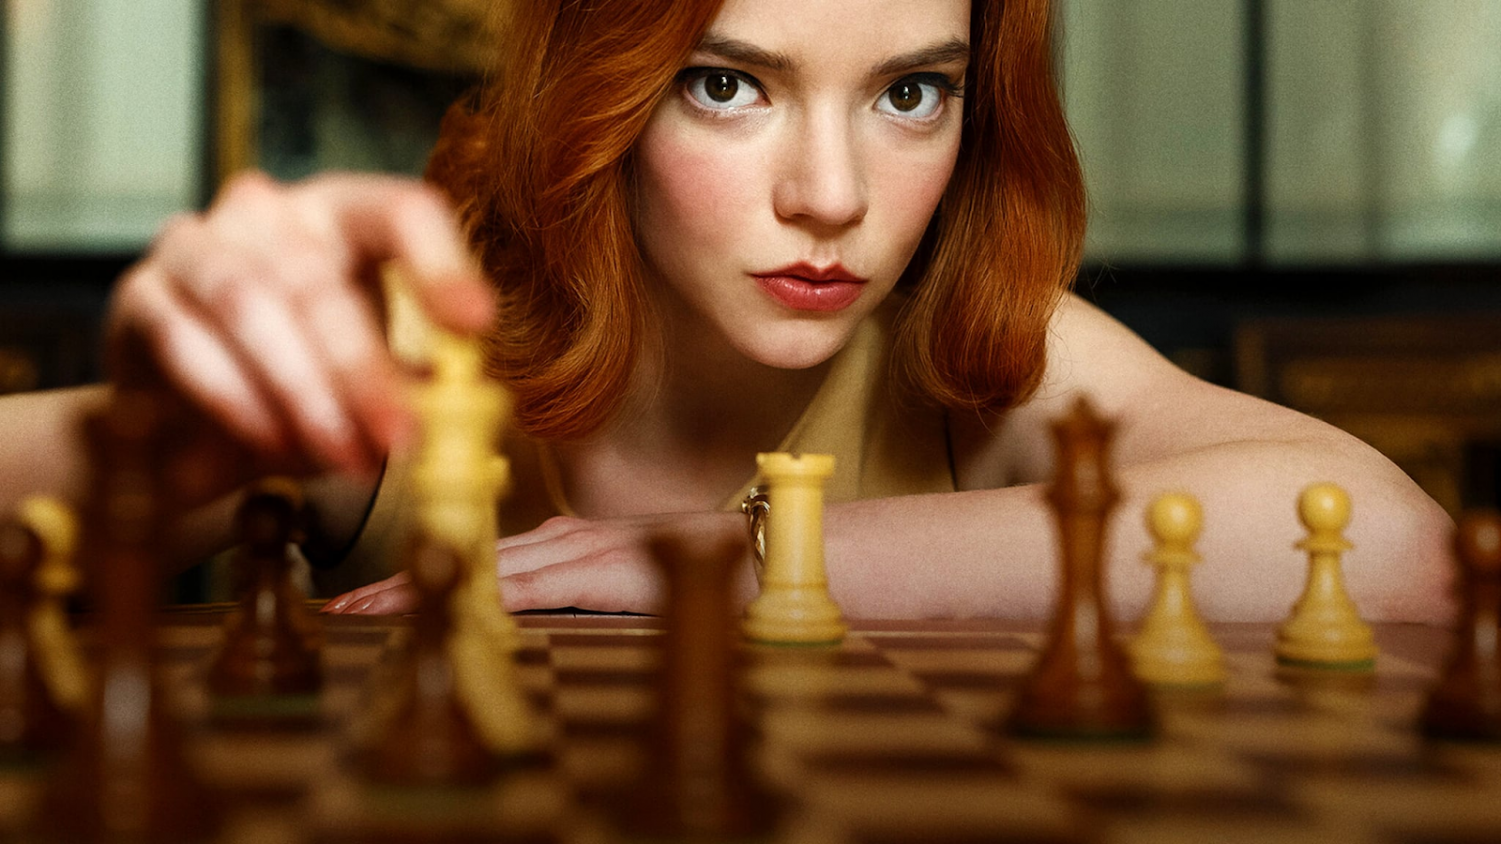 Chess (Short 2020) - IMDb